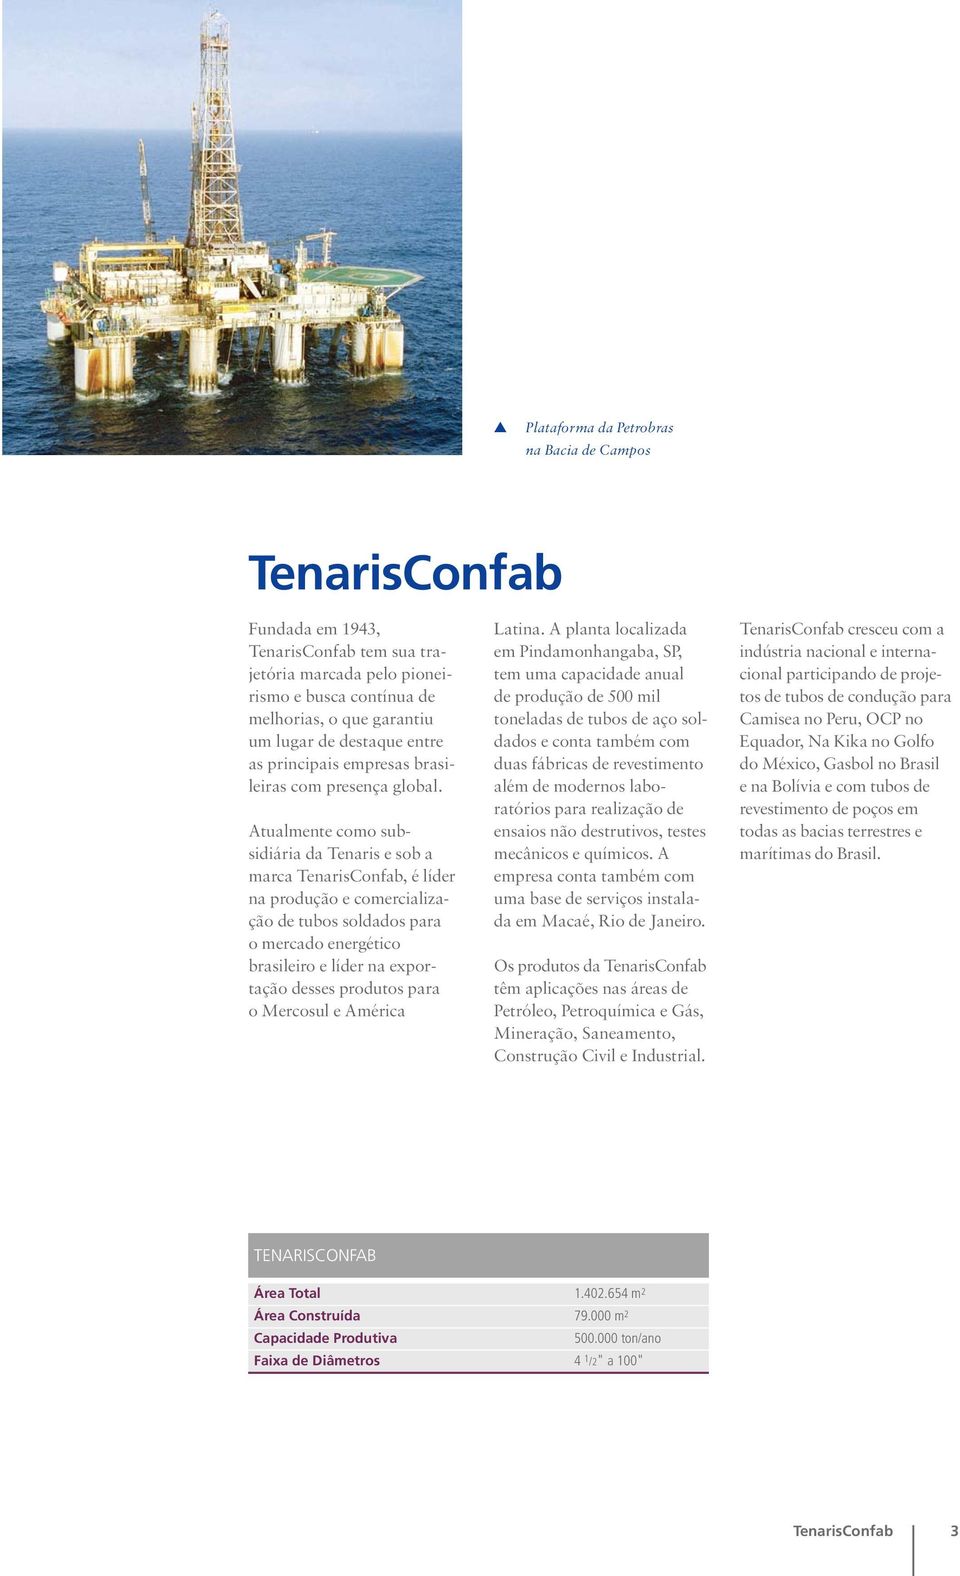 Atualmente como subsidiária da Tenaris e sob a marca TenarisConfab, é líder na produção e comercialização de tubos soldados para o mercado energético brasileiro e líder na exportação desses produtos